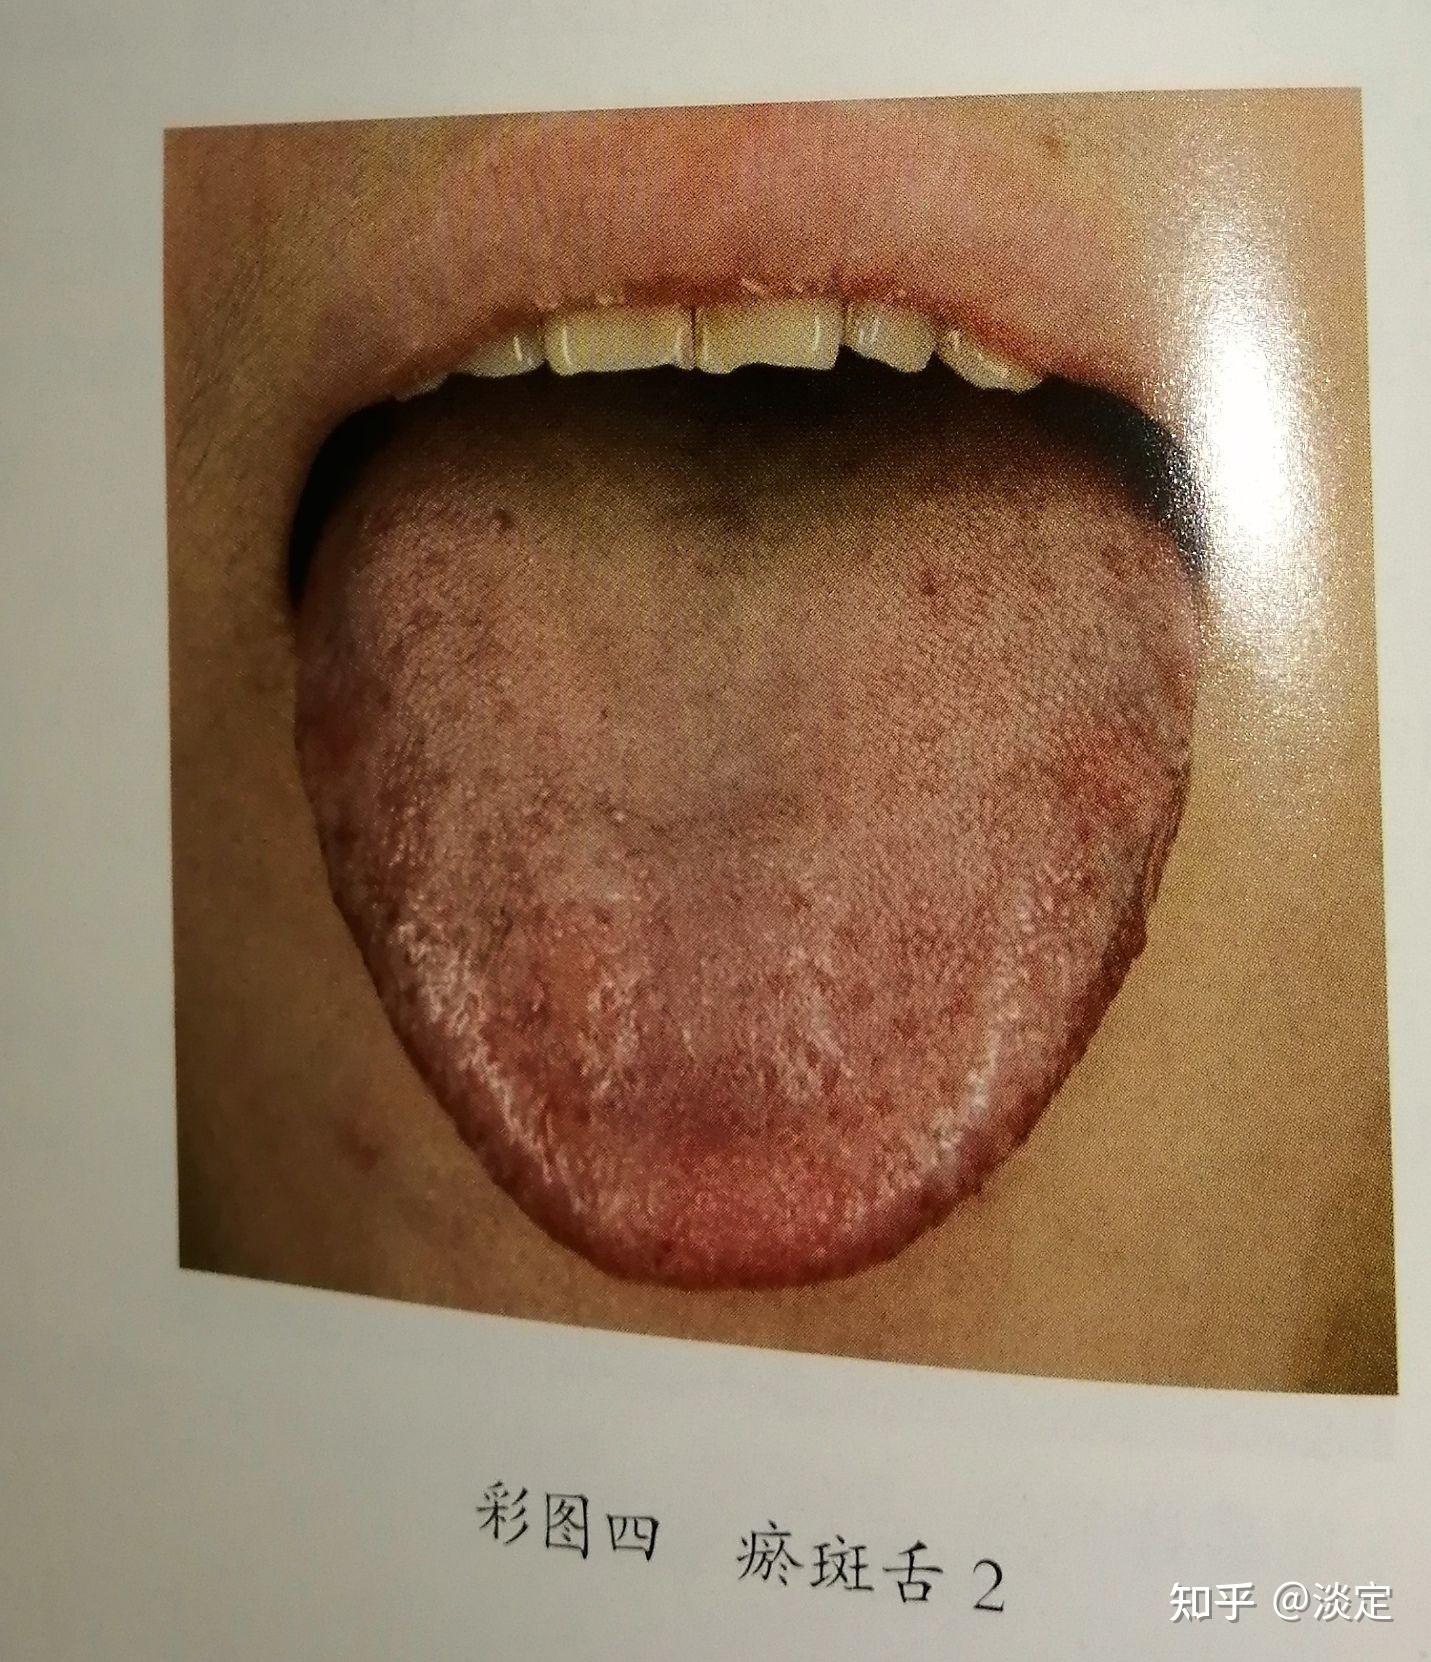 正常舌头根部照片,正常人的舌头根部照片 - 伤感说说吧